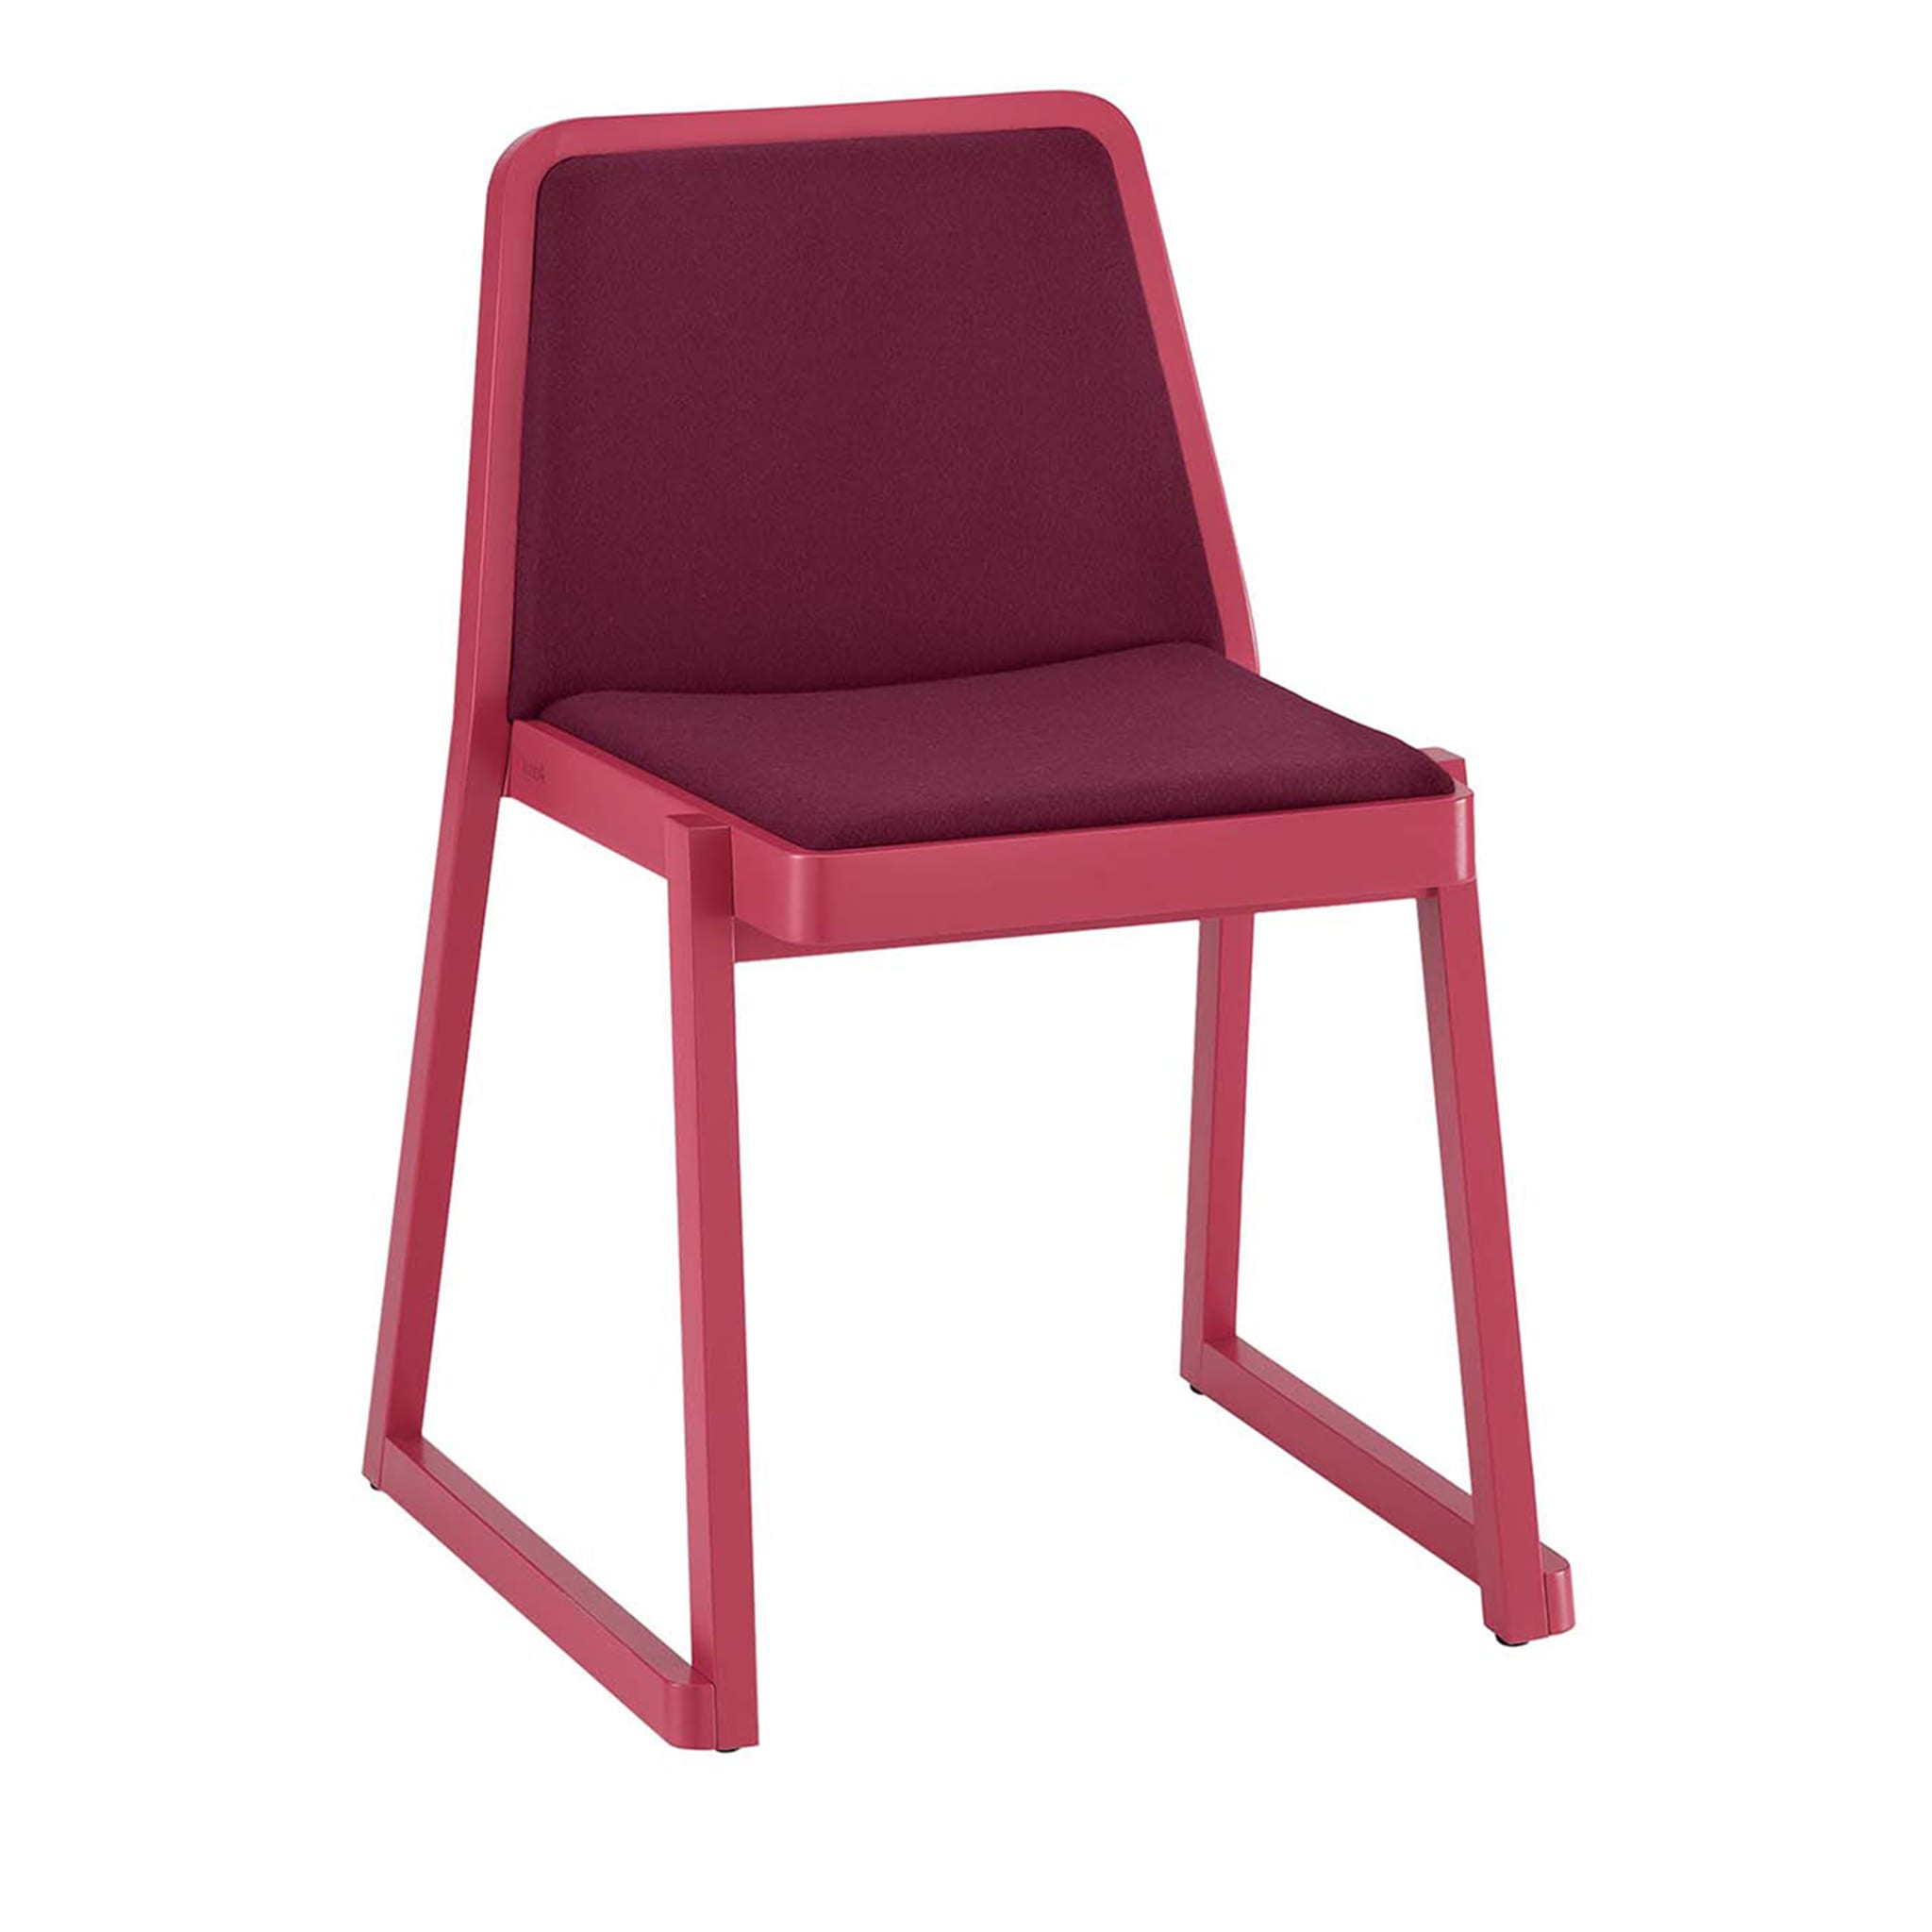 Roxanne Pink Chair by Emilio Nanni - Main view